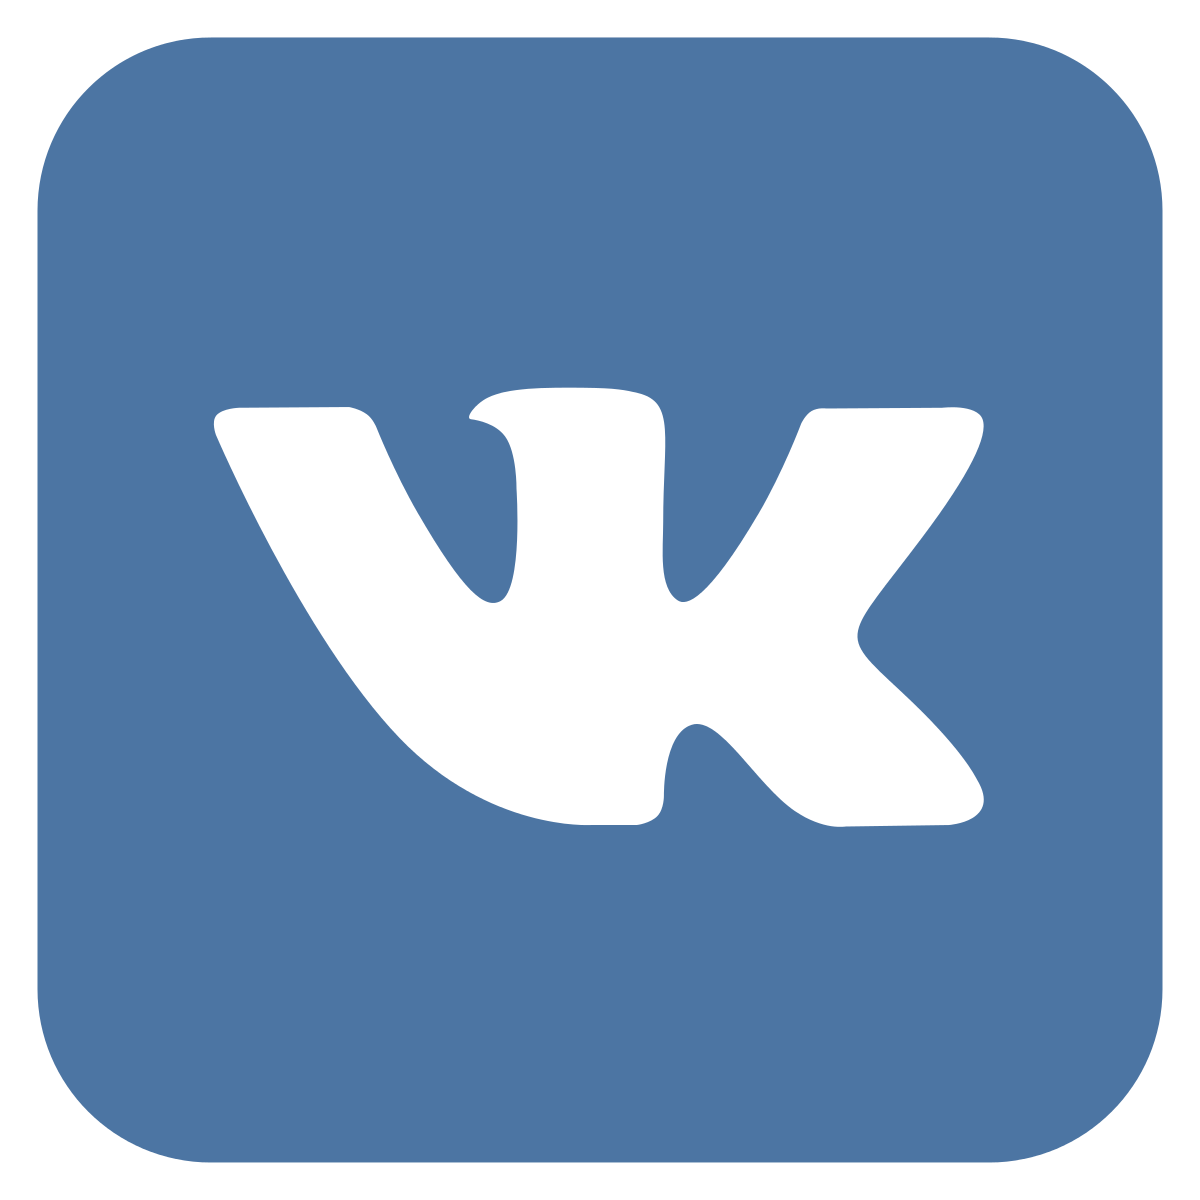 Vk.com страница Студия